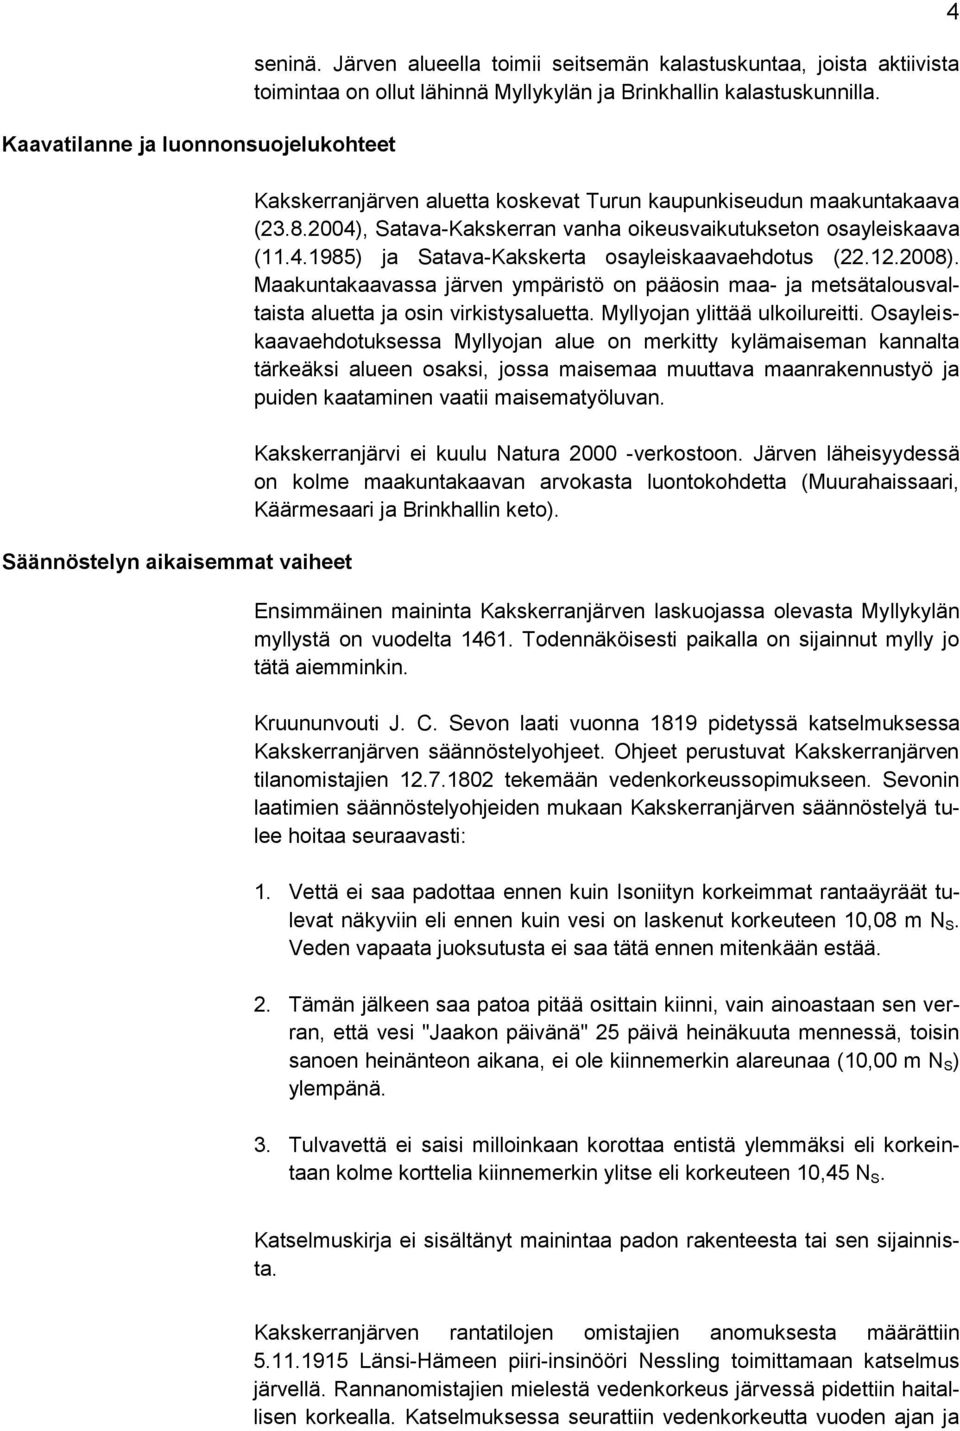 Kakskerranjärven aluetta koskevat Turun kaupunkiseudun maakuntakaava (23.8.2004), Satava-Kakskerran vanha oikeusvaikutukseton osayleiskaava (11.4.1985) ja Satava-Kakskerta osayleiskaavaehdotus (22.12.